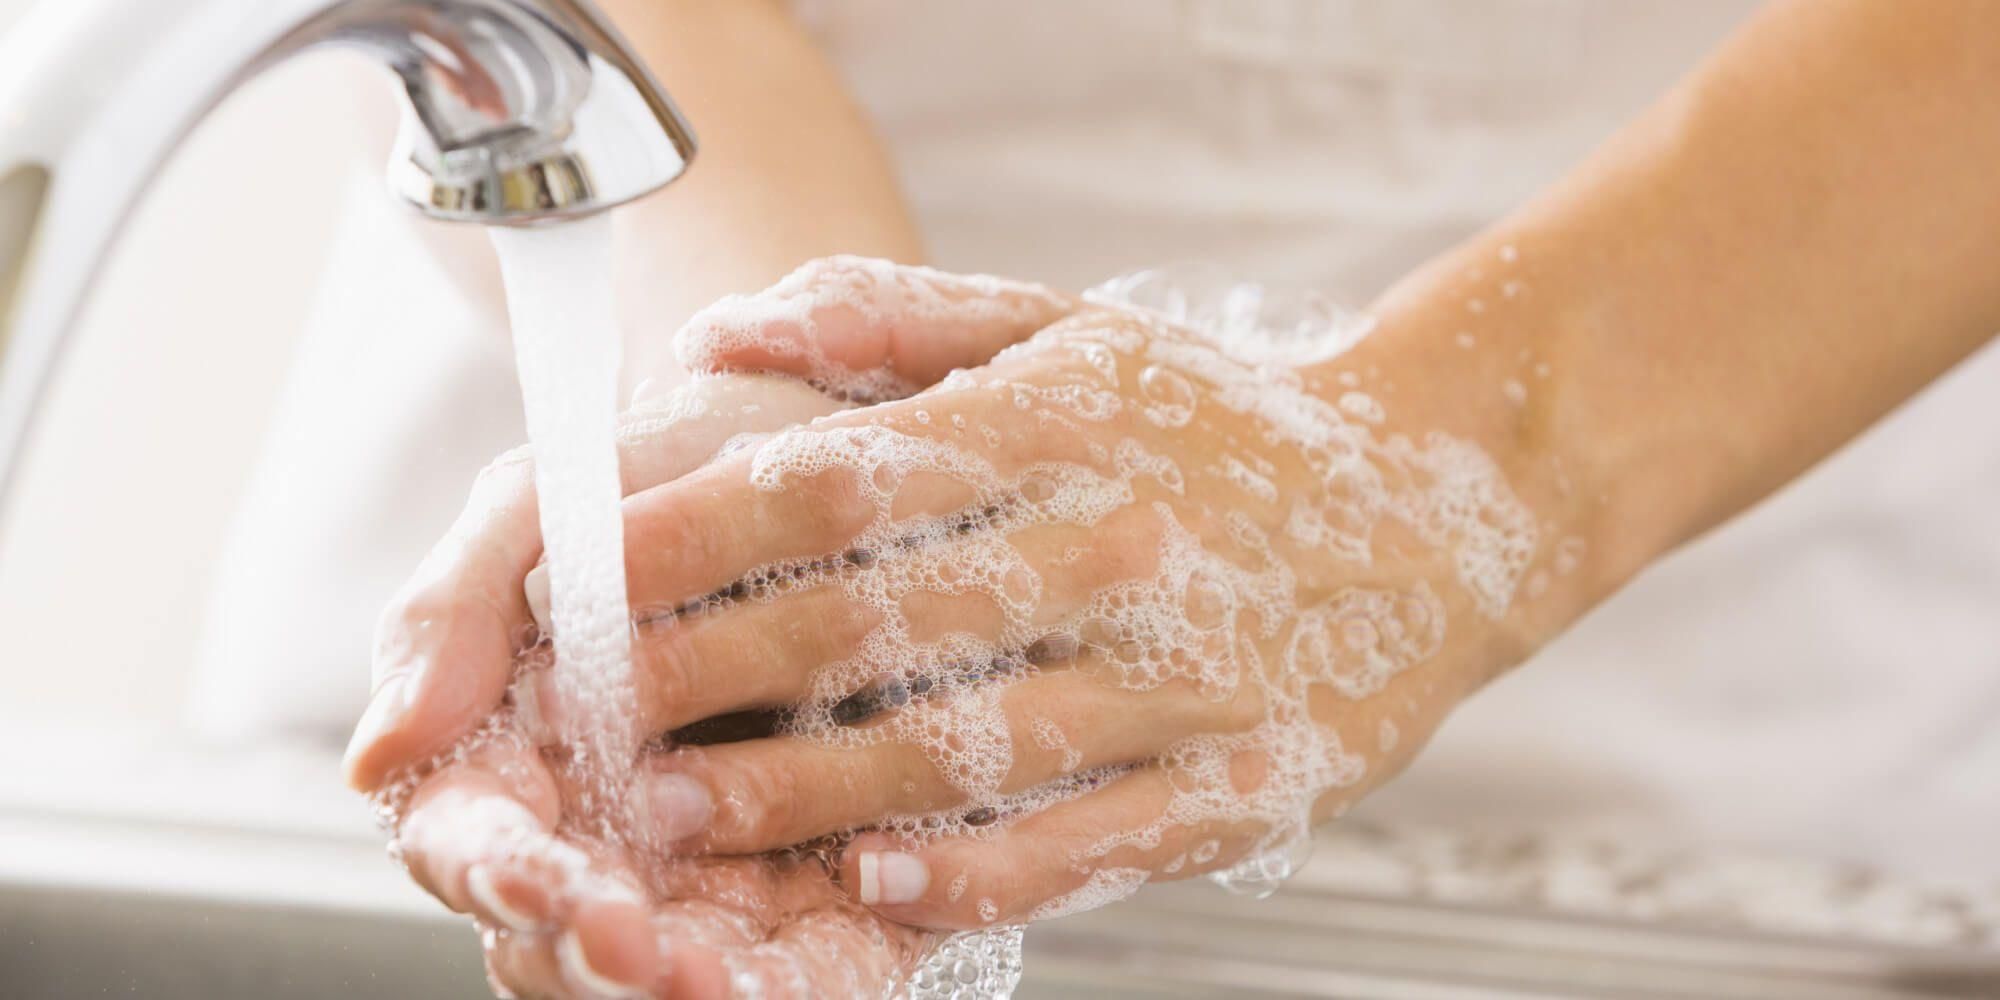 Як правильно мити руки: відео